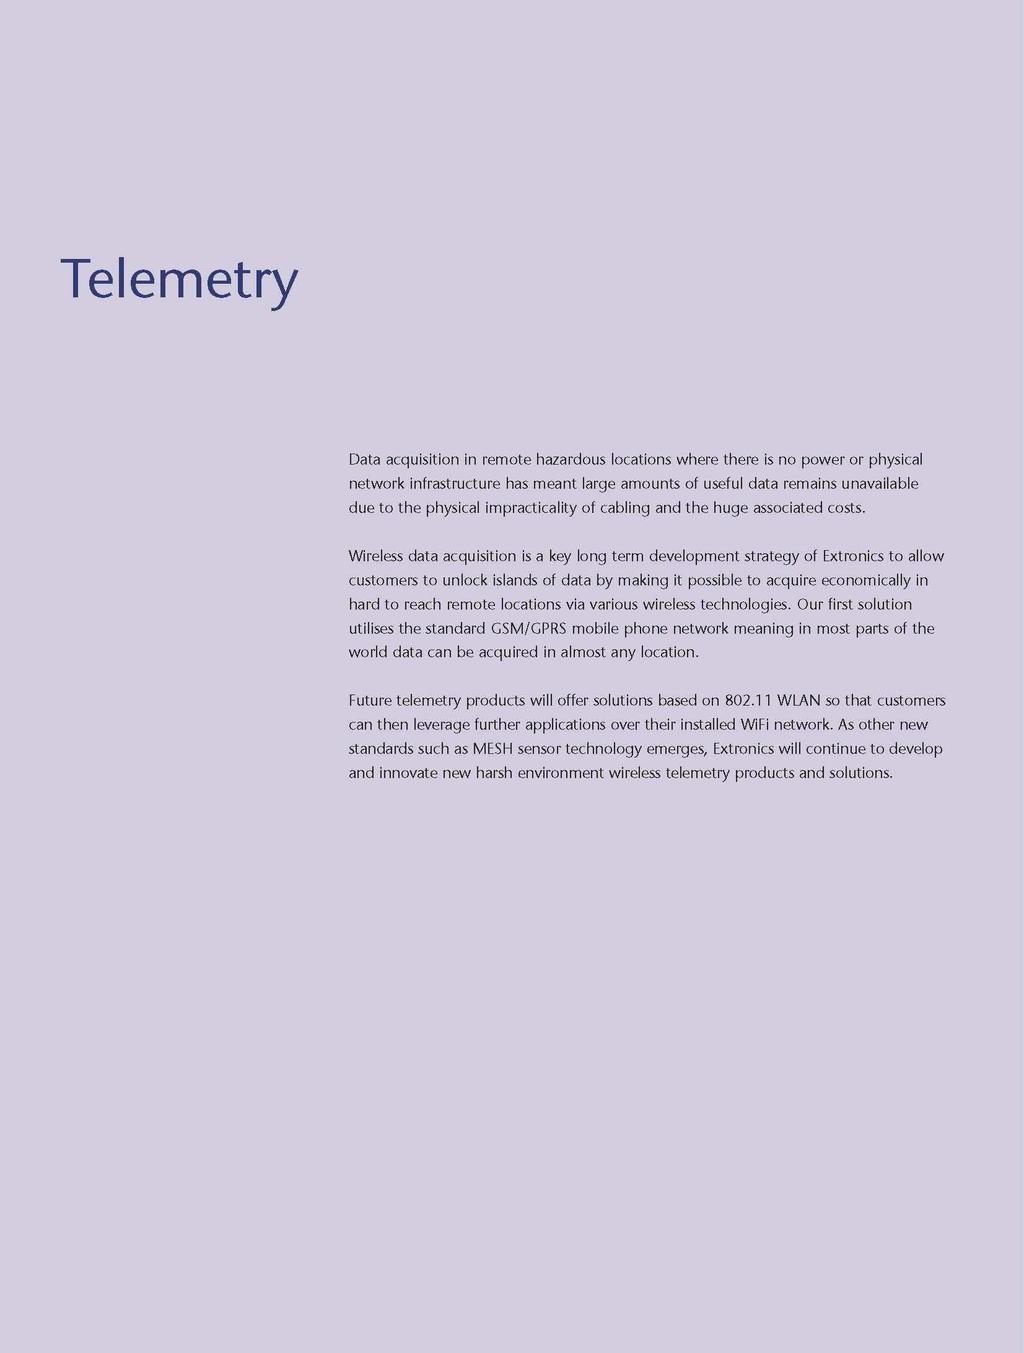 Telemetry Wireless Networks